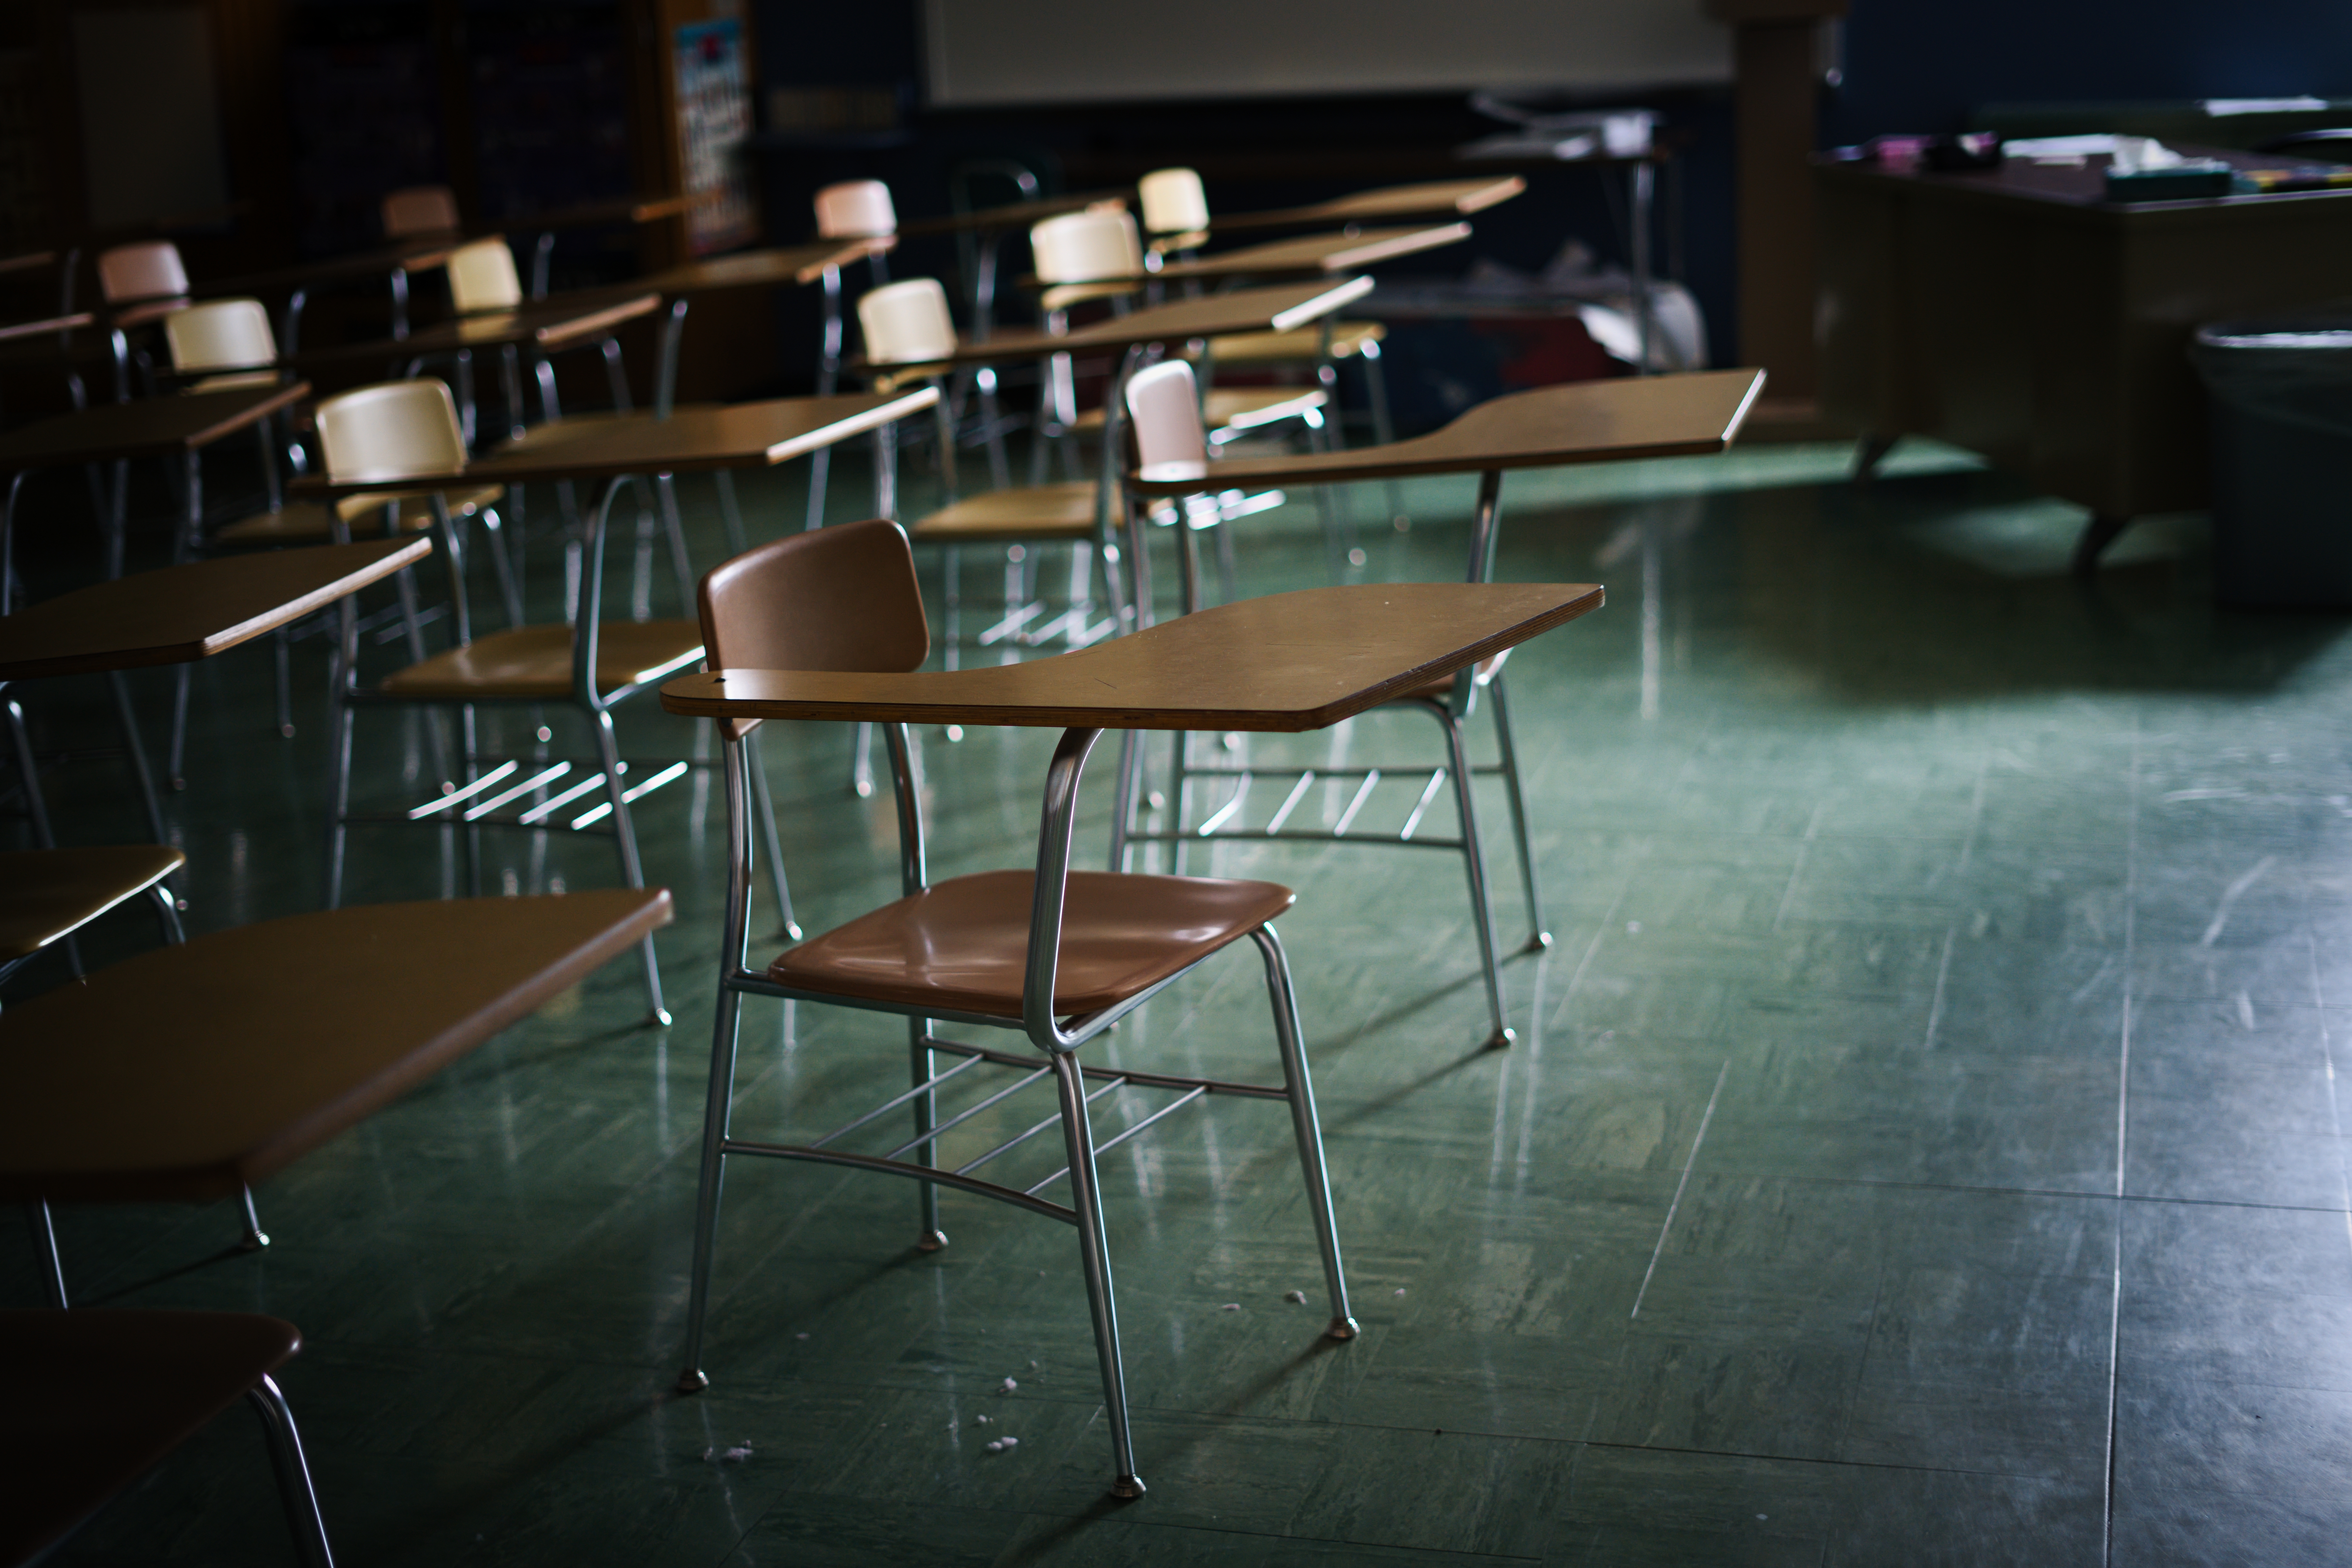 Un aula oscura y vacía | Foto: Shutterstock